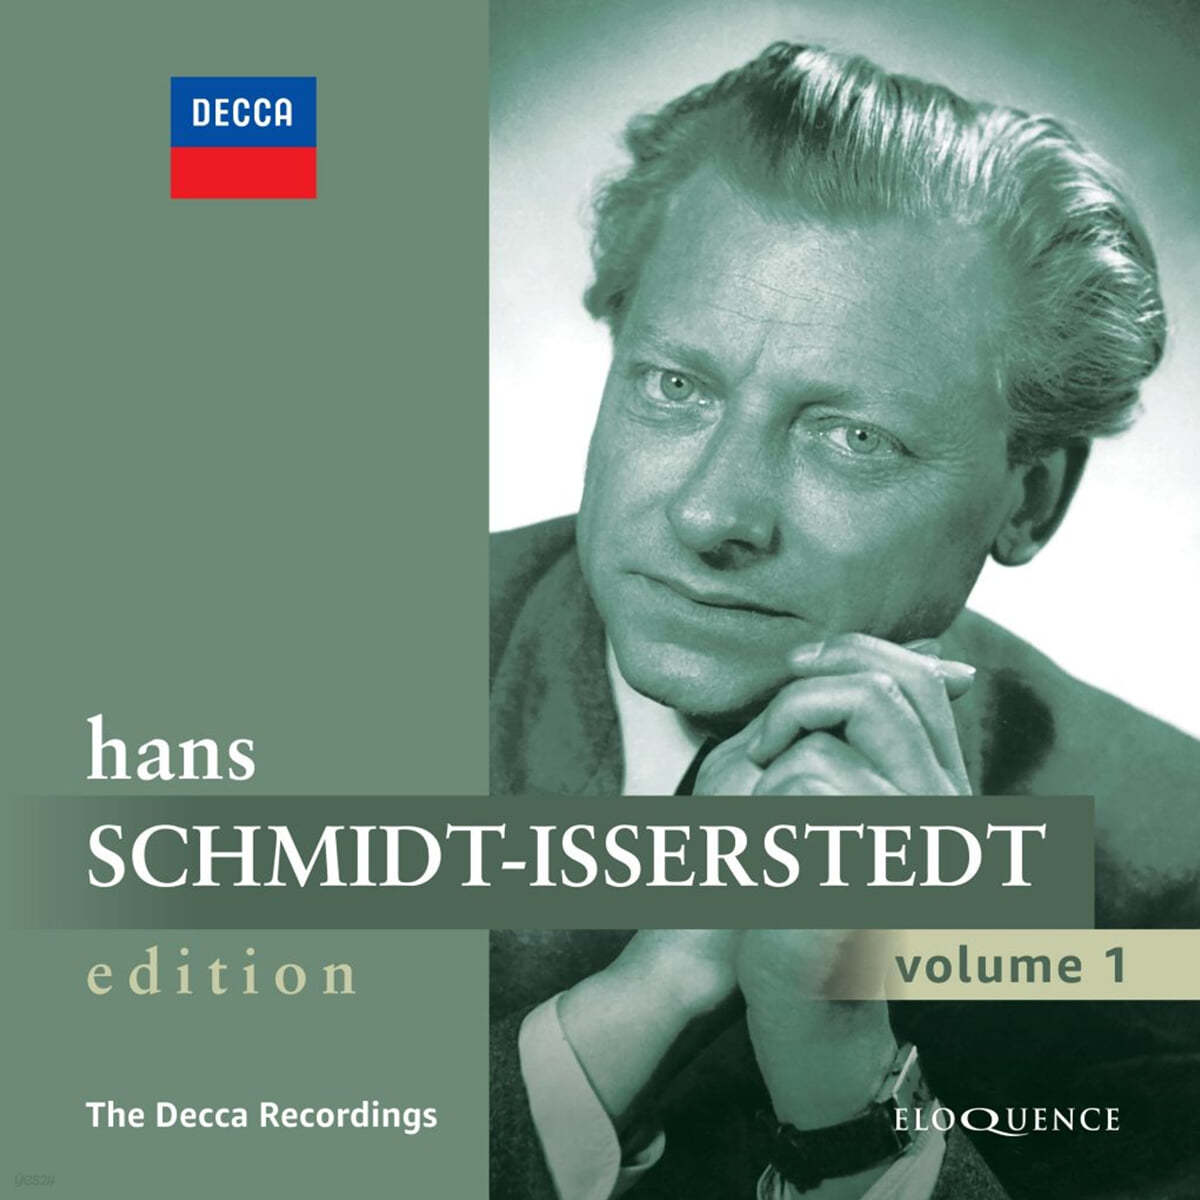 Hans Schmidt-Isserstedt 데카 레이블 녹음집 (The Decca Recordings)